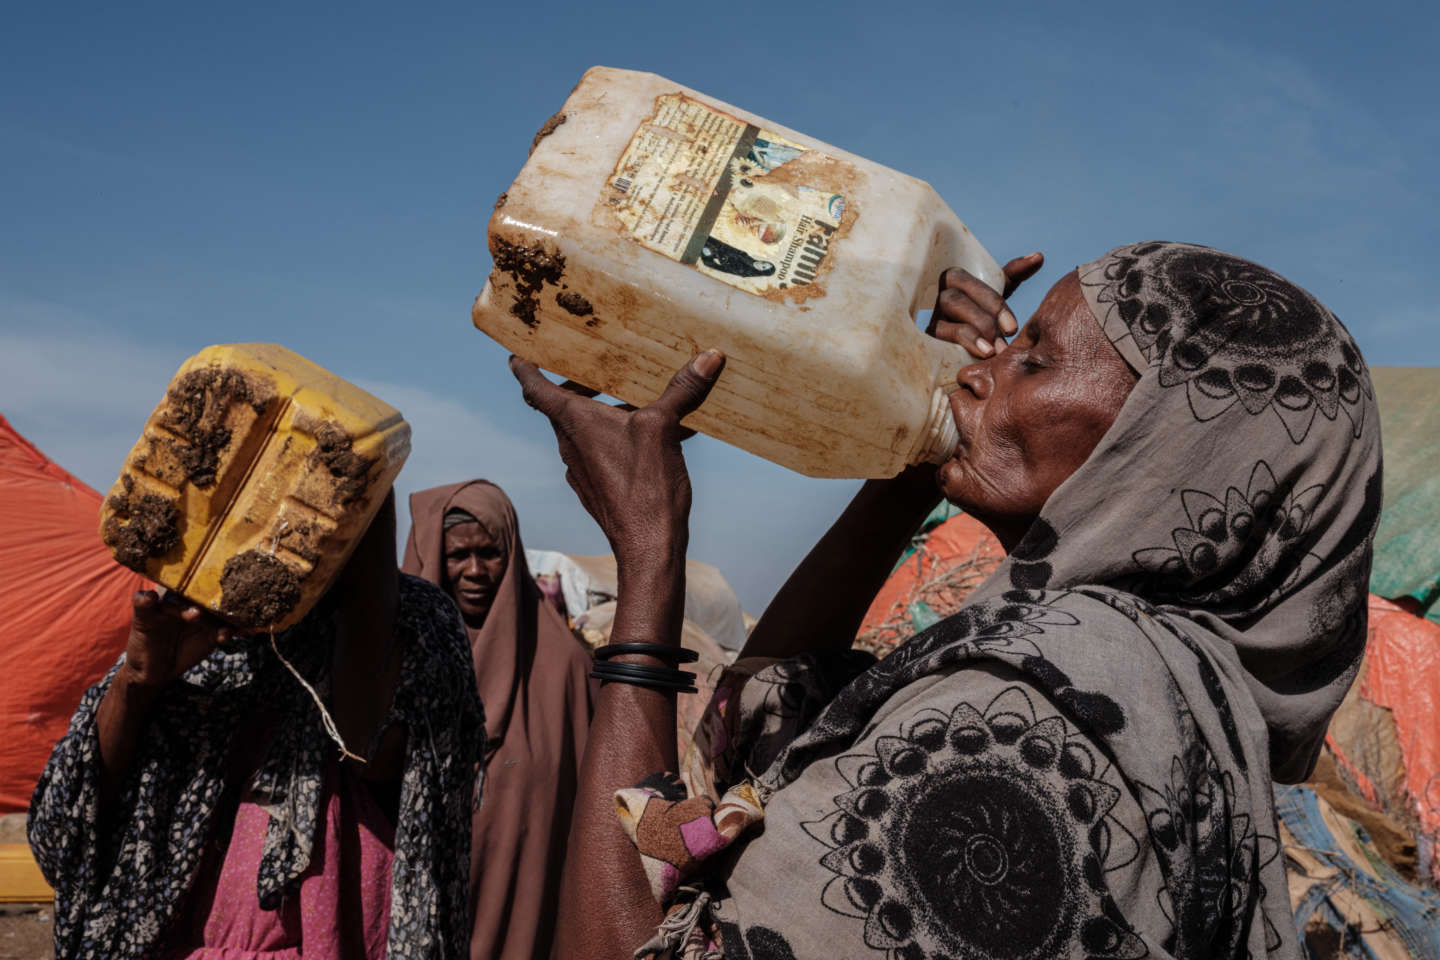 Sécheresse en Somalie : « la famine frappe à la porte », alerte un responsable des Nations unies